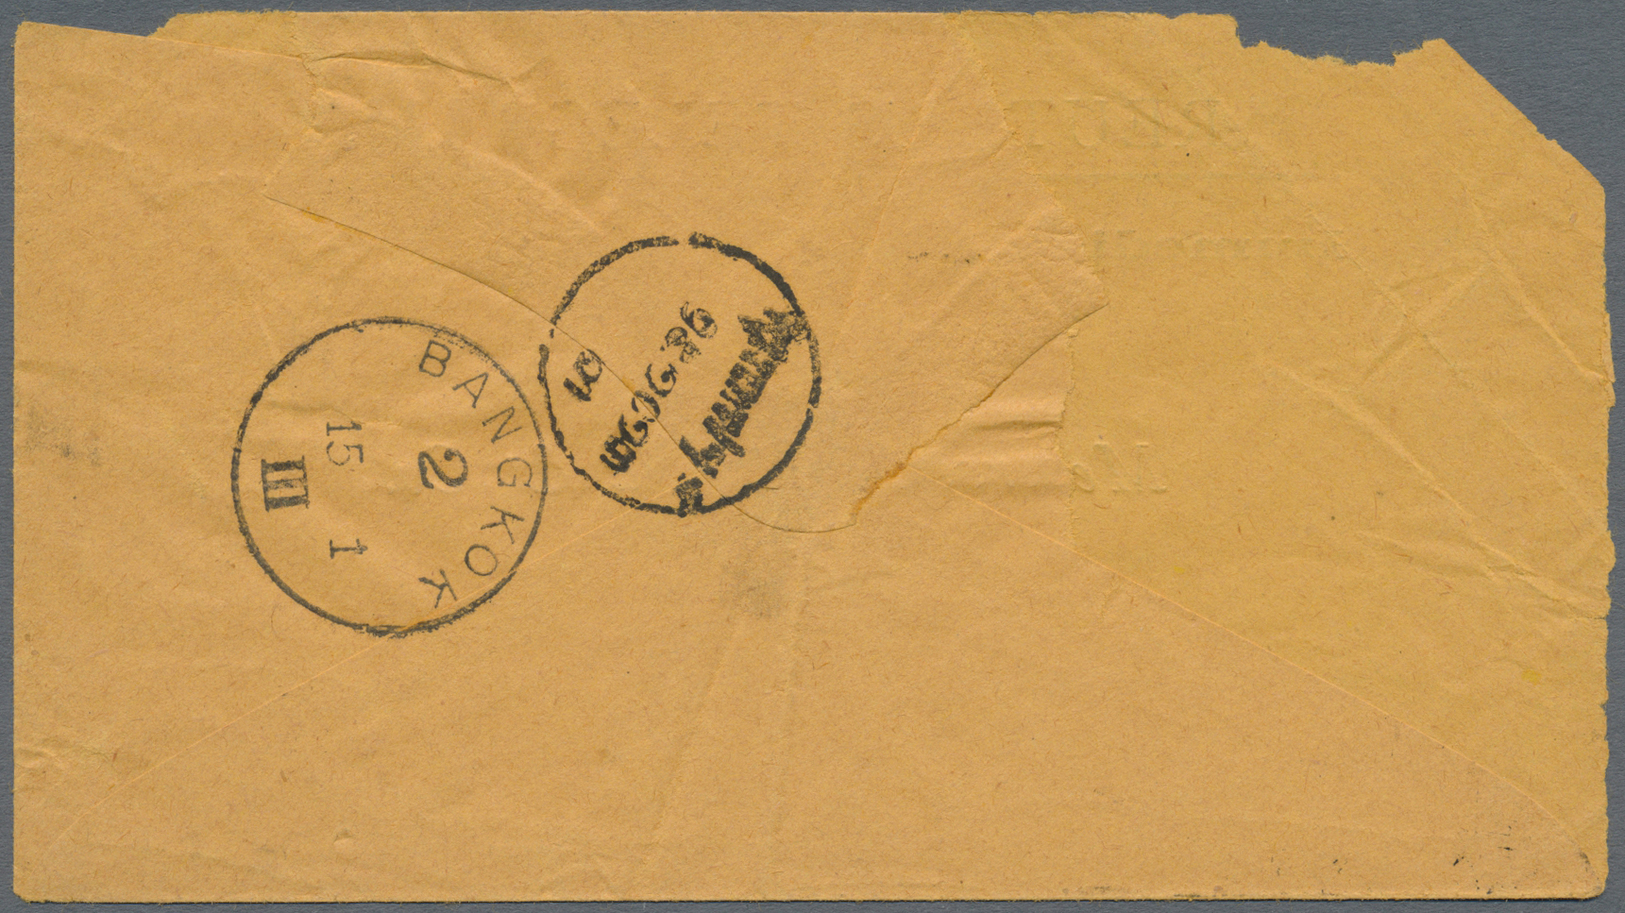 Br Thailand: 1894, 1 Att./64 Att. Tied "BANGKOK1 15 1 95" To Envelope "REUTER'S TELEGRAM", Backstamps "BANGKOK2 15 1 III - Thailand